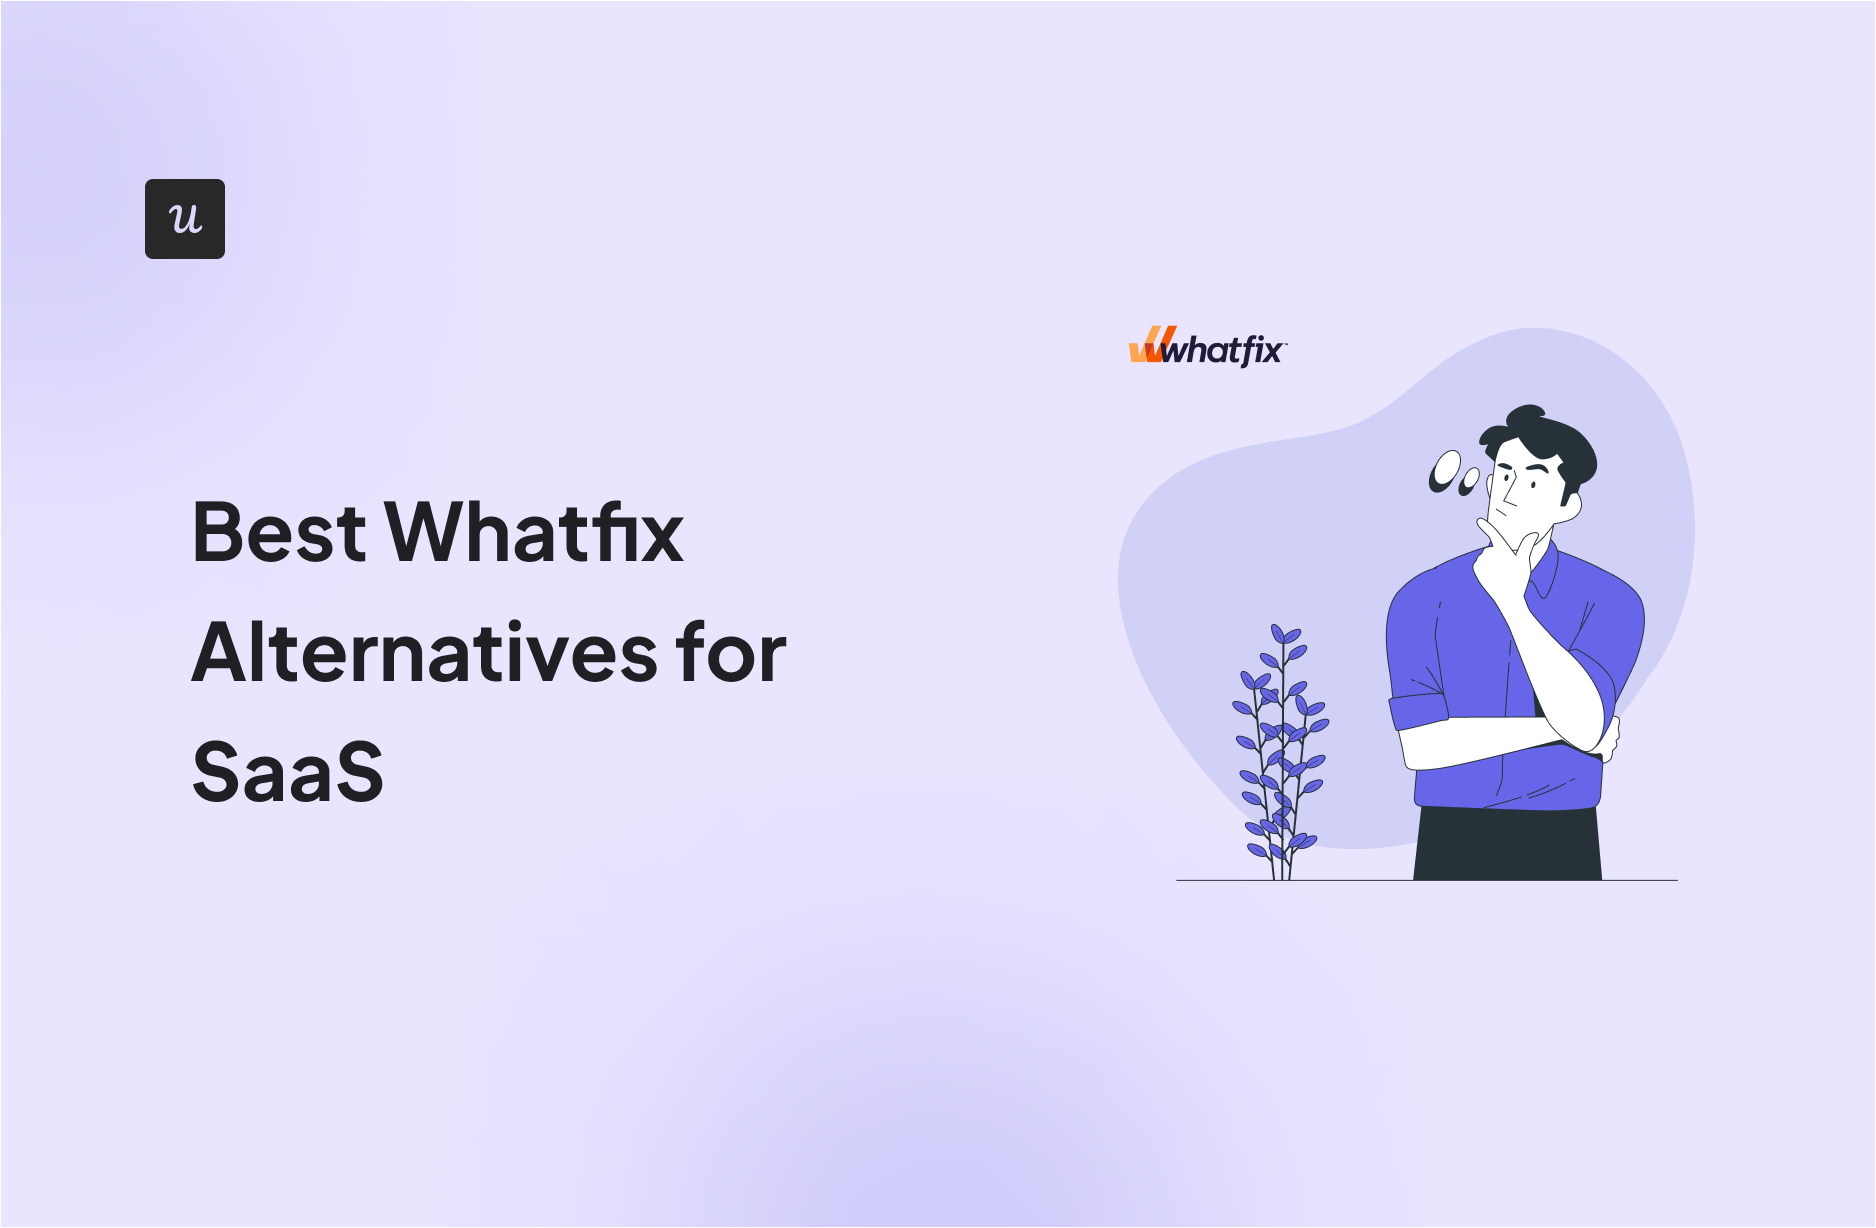 Best-Whatfix-Alternatives-for-SaaS